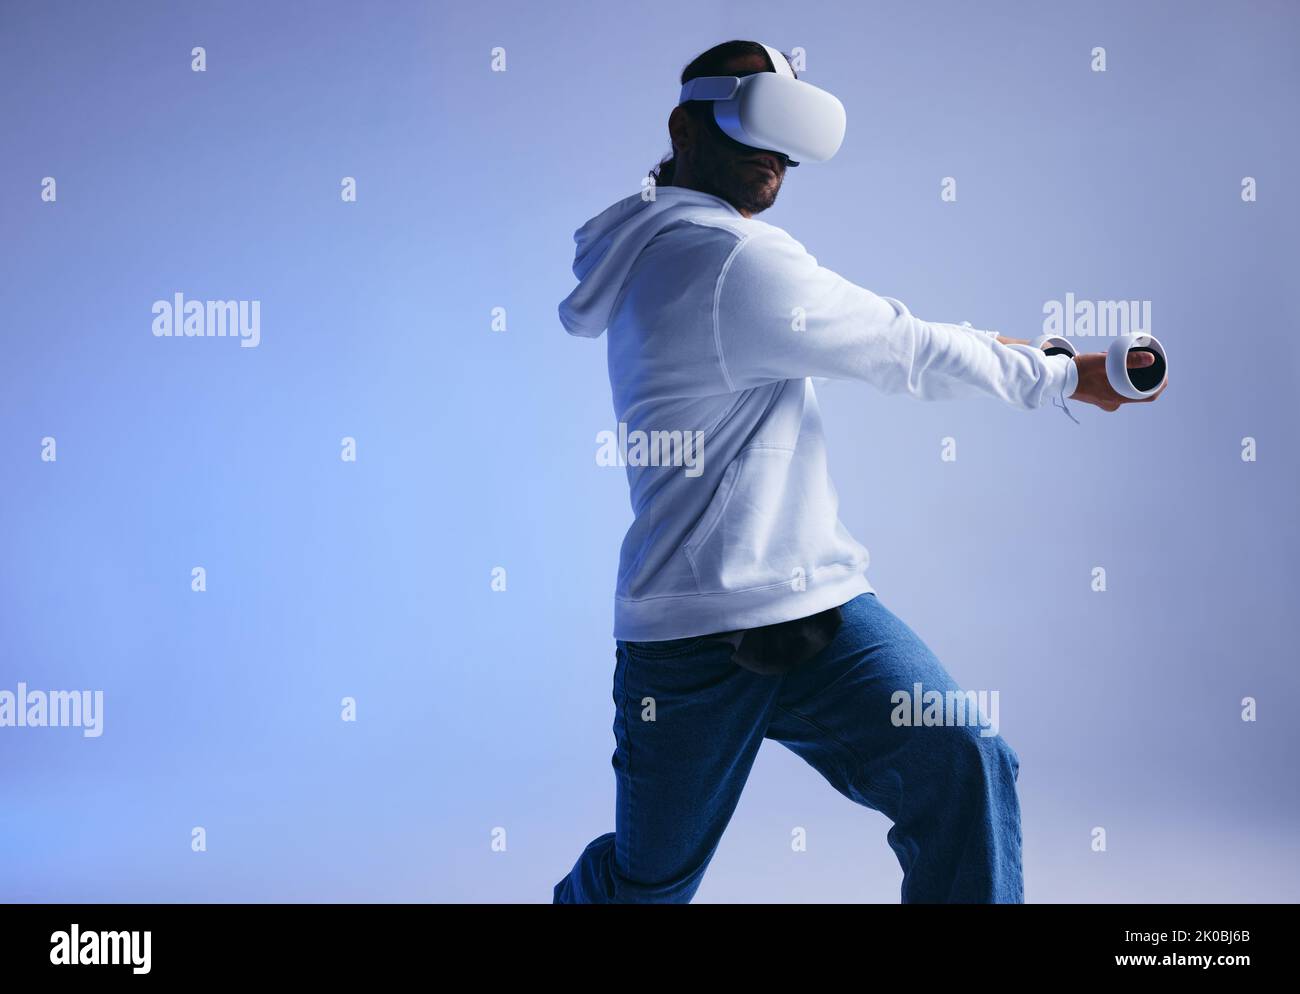 Cricket in der virtuellen Realität. Sportlicher junger Mann, der mit Gaming-Controllern einen virtuellen Ball schlägt. Aktiver junger Mann, der beim Tragen immersive VR-Spiele erforscht Stockfoto